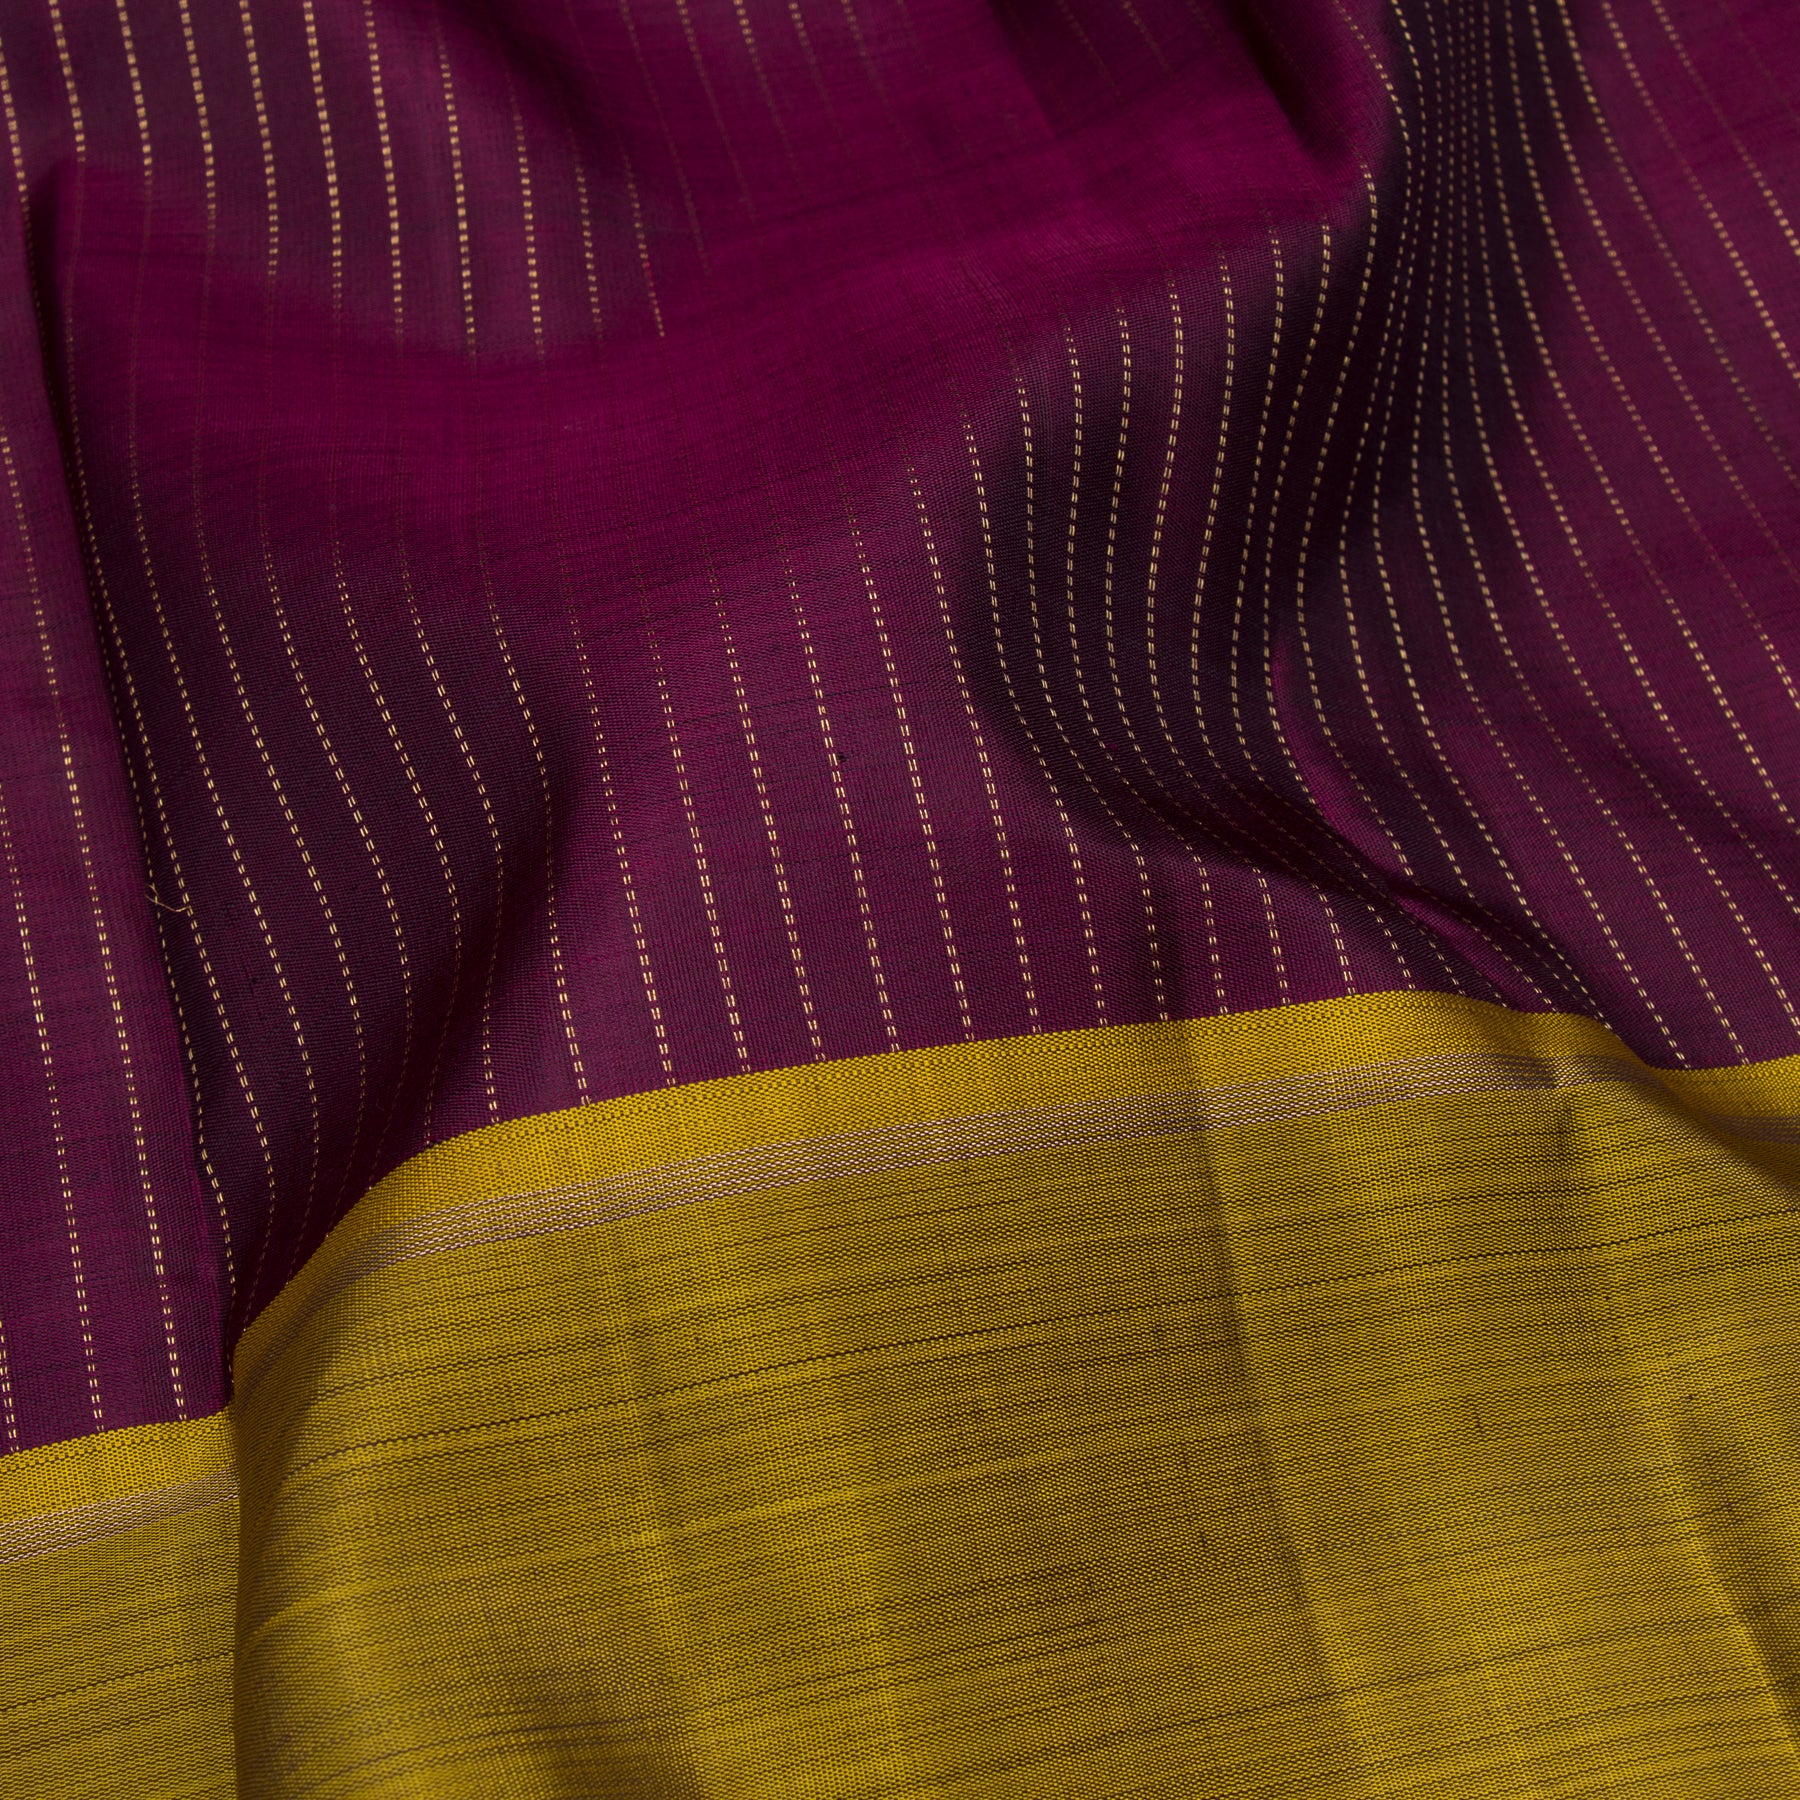 Kanakavalli Kanjivaram Silk Sari 23-599-HS001-08180 - Fabric View